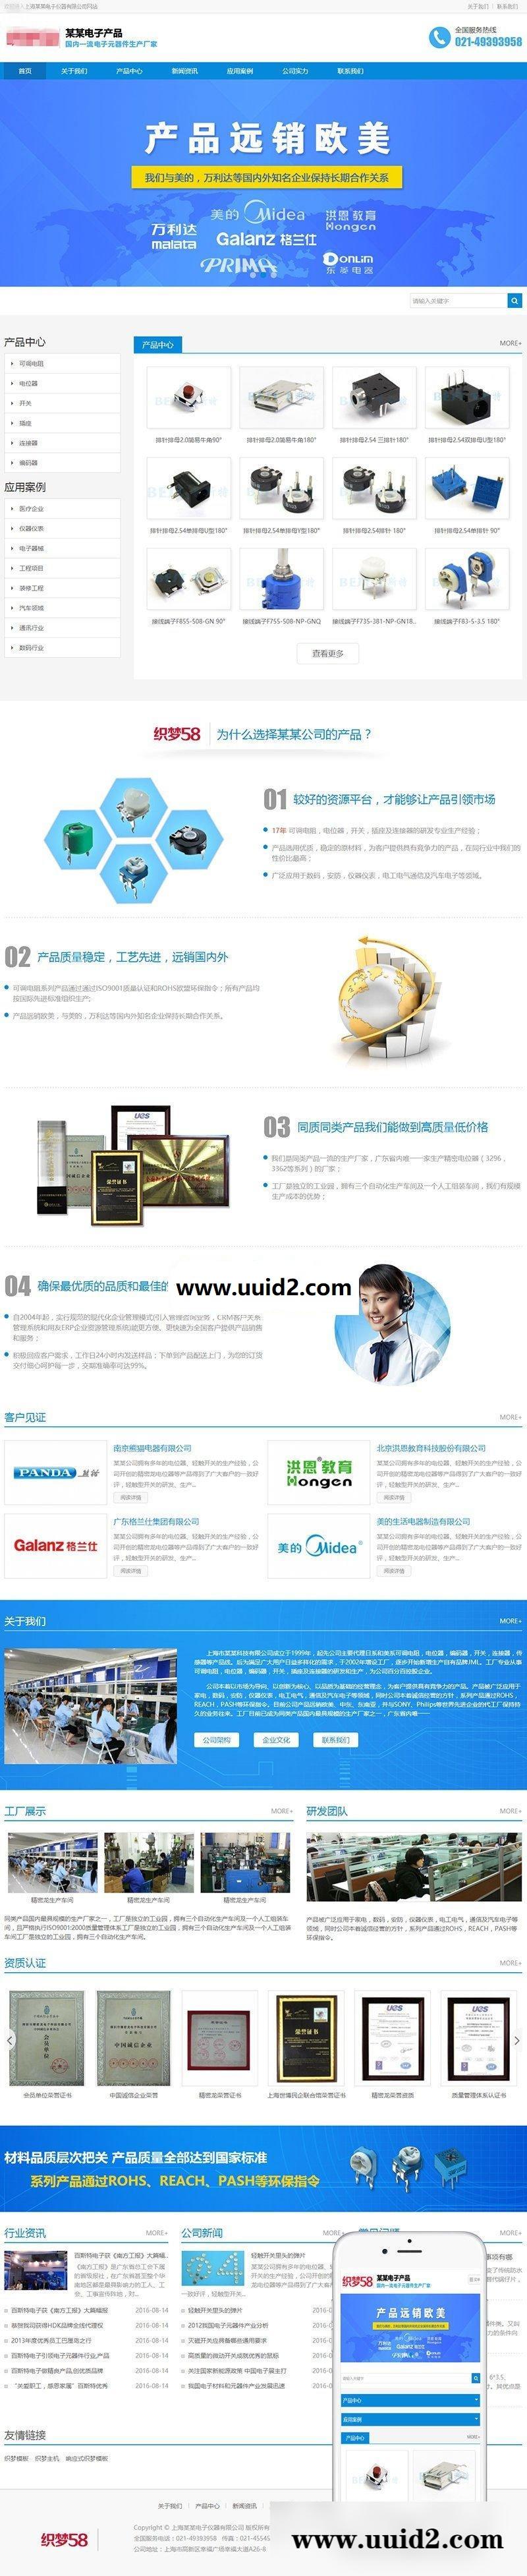 织梦dedecms响应式营销型电子仪器公司网站模板(自适应手机移动端)